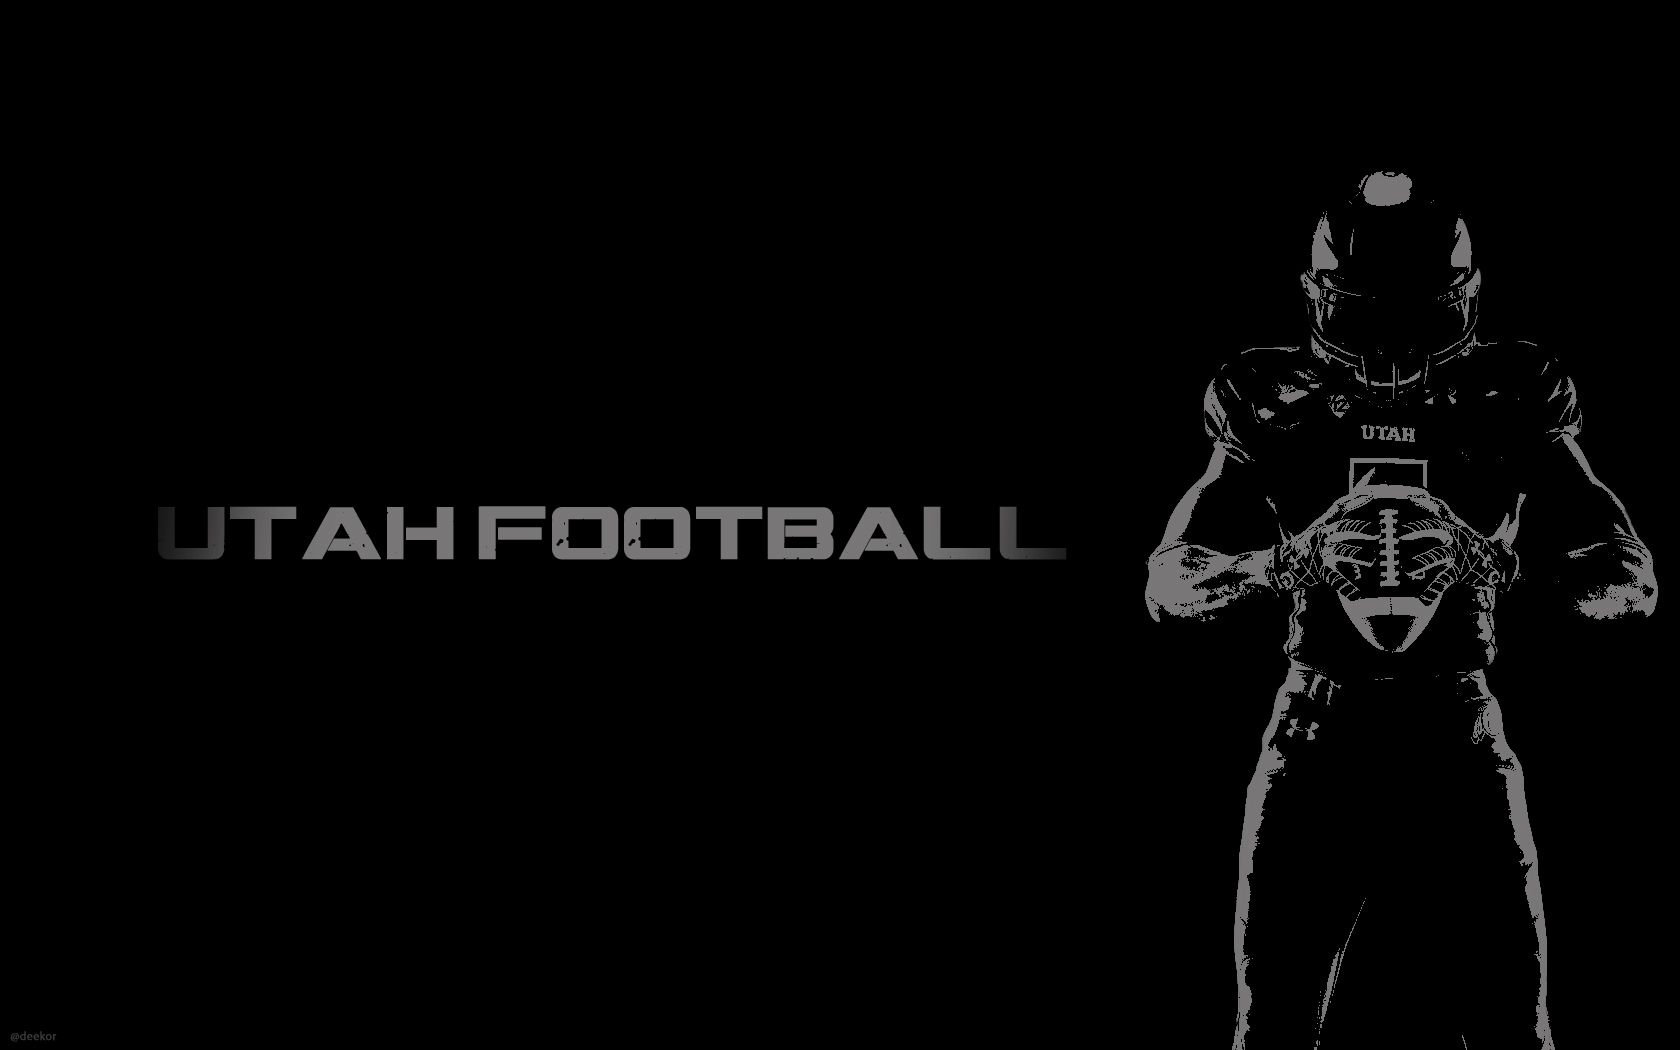 Utah Football Wallpaper - Utah Football , HD Wallpaper & Backgrounds